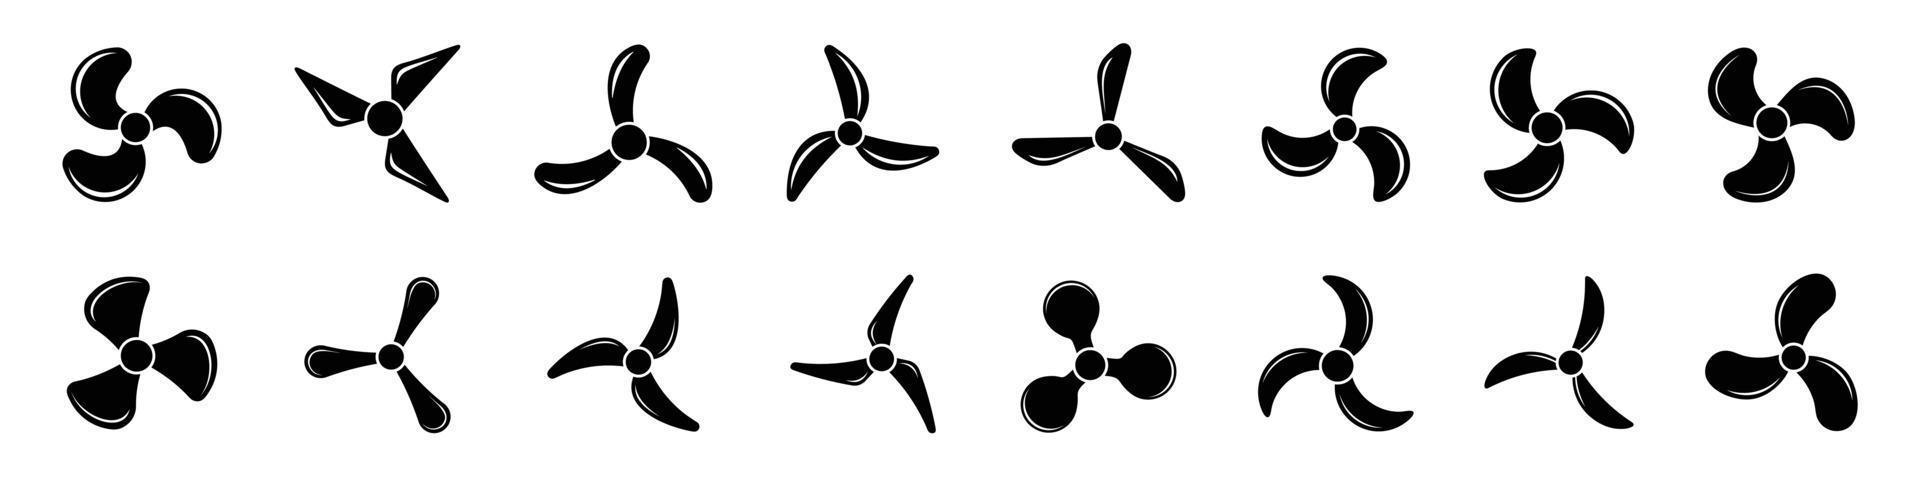 icônes d'hélice d'avion, illustration vectorielle de ventilateur de symboles.jeu d'icônes d'hélice vecteur